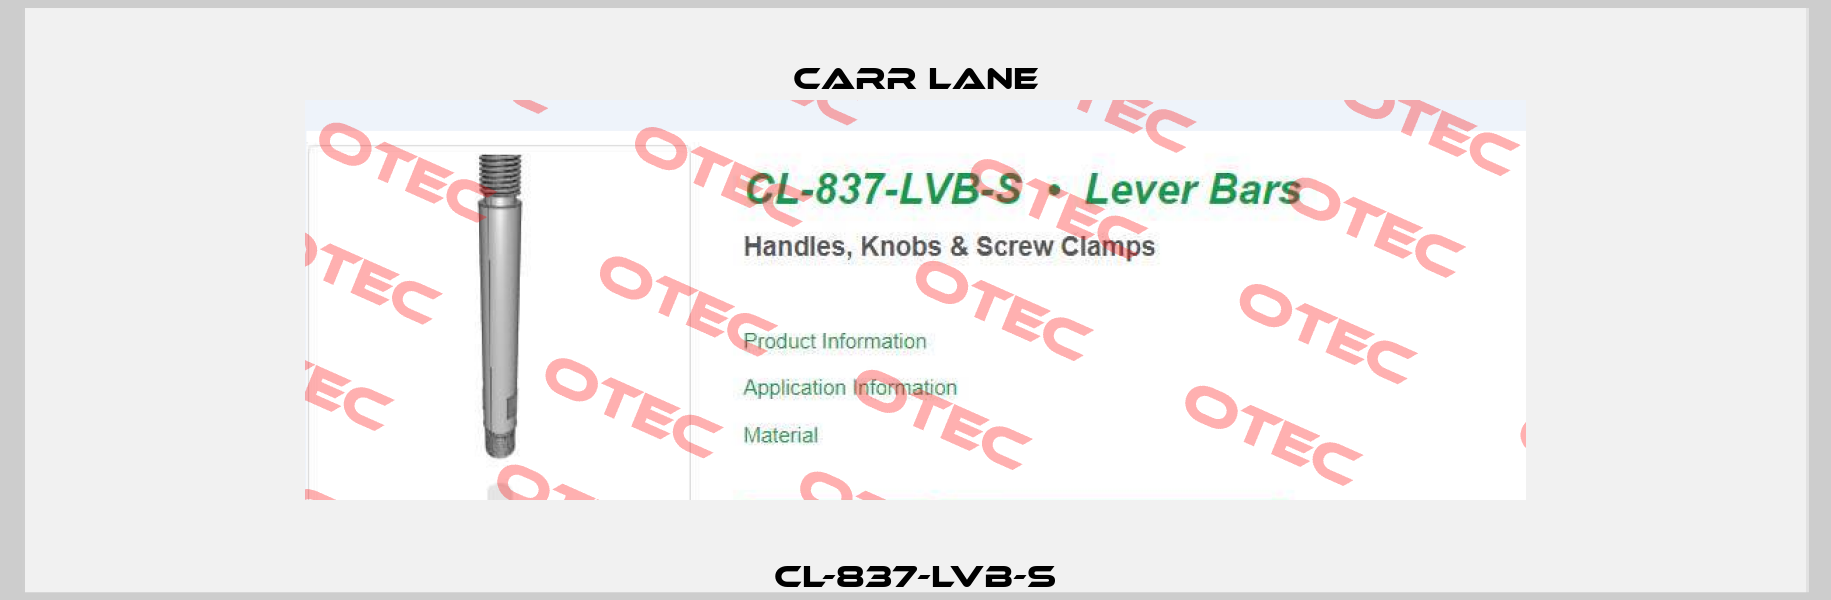 CL-837-LVB-S Carr Lane